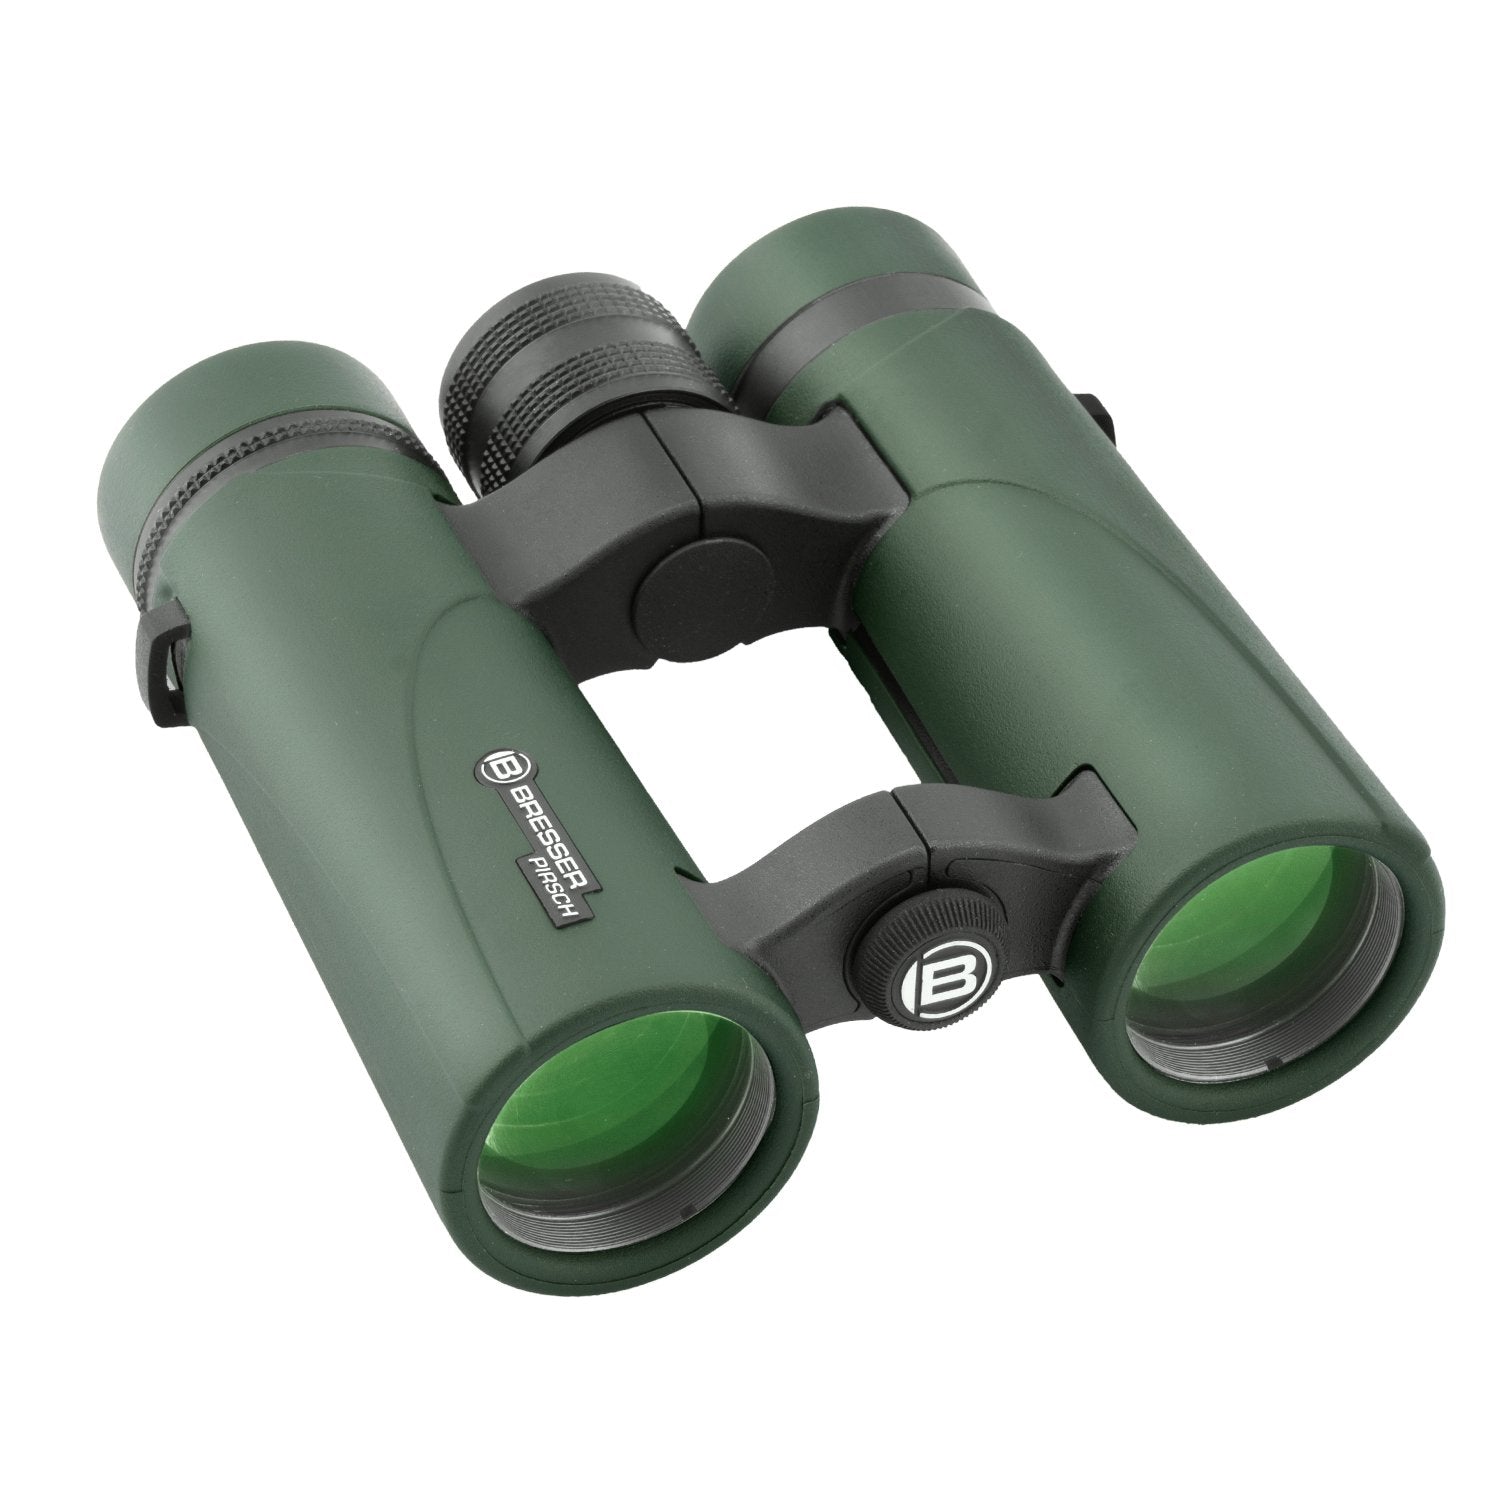 Bresser Pirsch 8x34 Binoculars - CoreScientifics